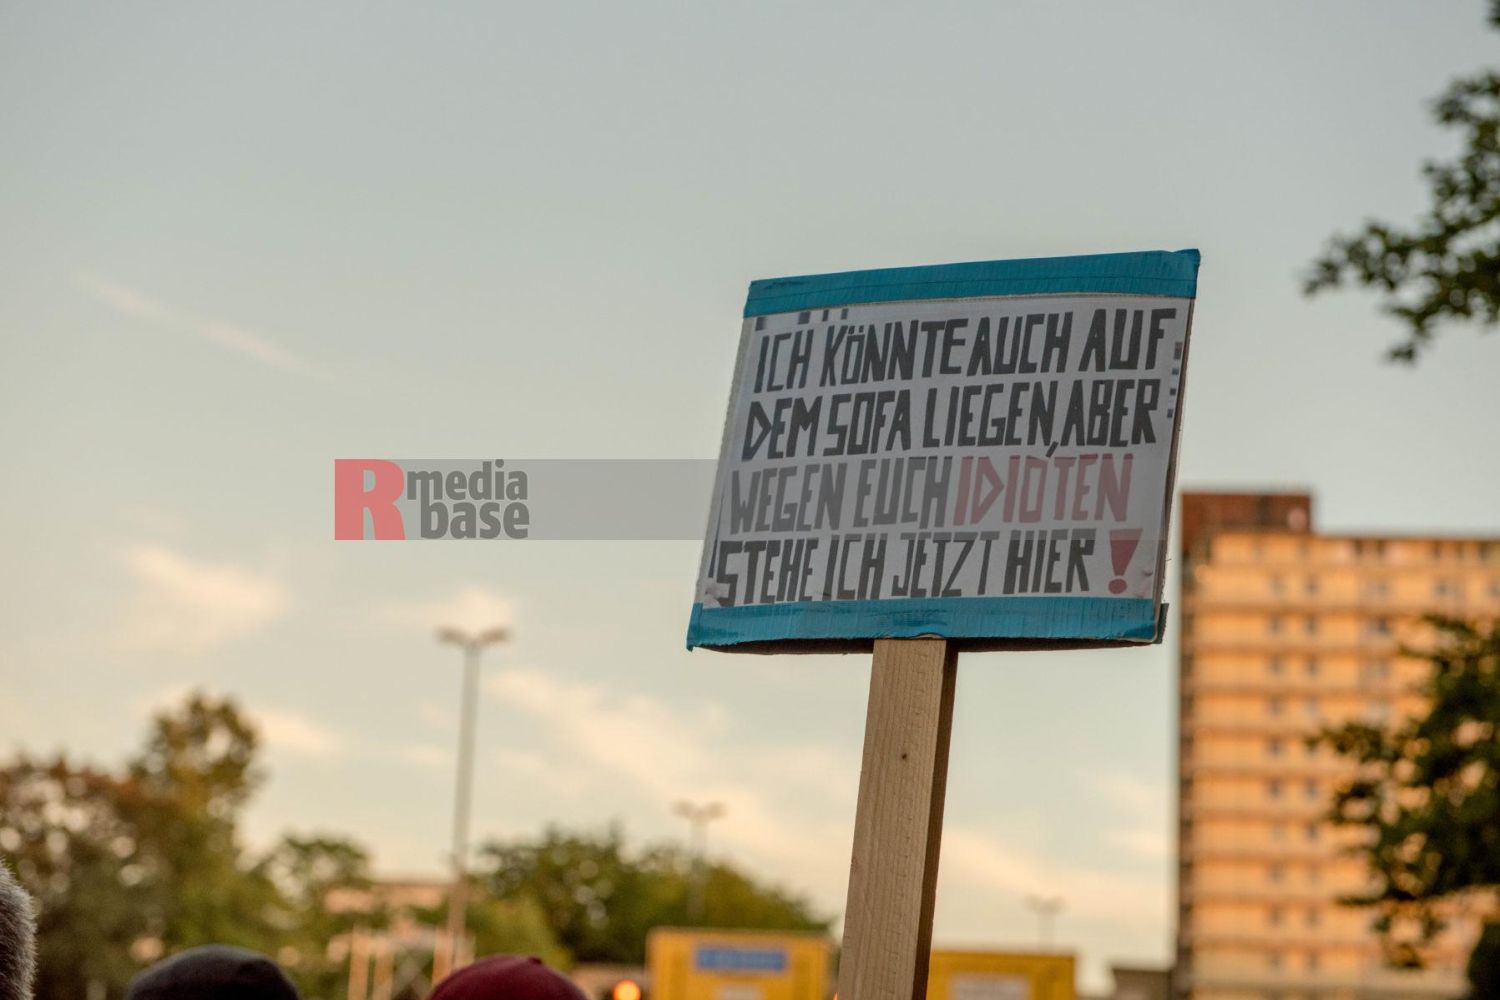 Laut - Bunt - Entschlossen! Protest gegen den Bundesparteitag der AfD in Essen <i>Bild Christian Schneider/R-mediabase</i> <br><a href=/confor2/?bld=83044&pst=82663&aid=615&dc=1322&i1=Christian%20Schneider/R-mediabase><strong>Downloadanfrage</strong></a>  